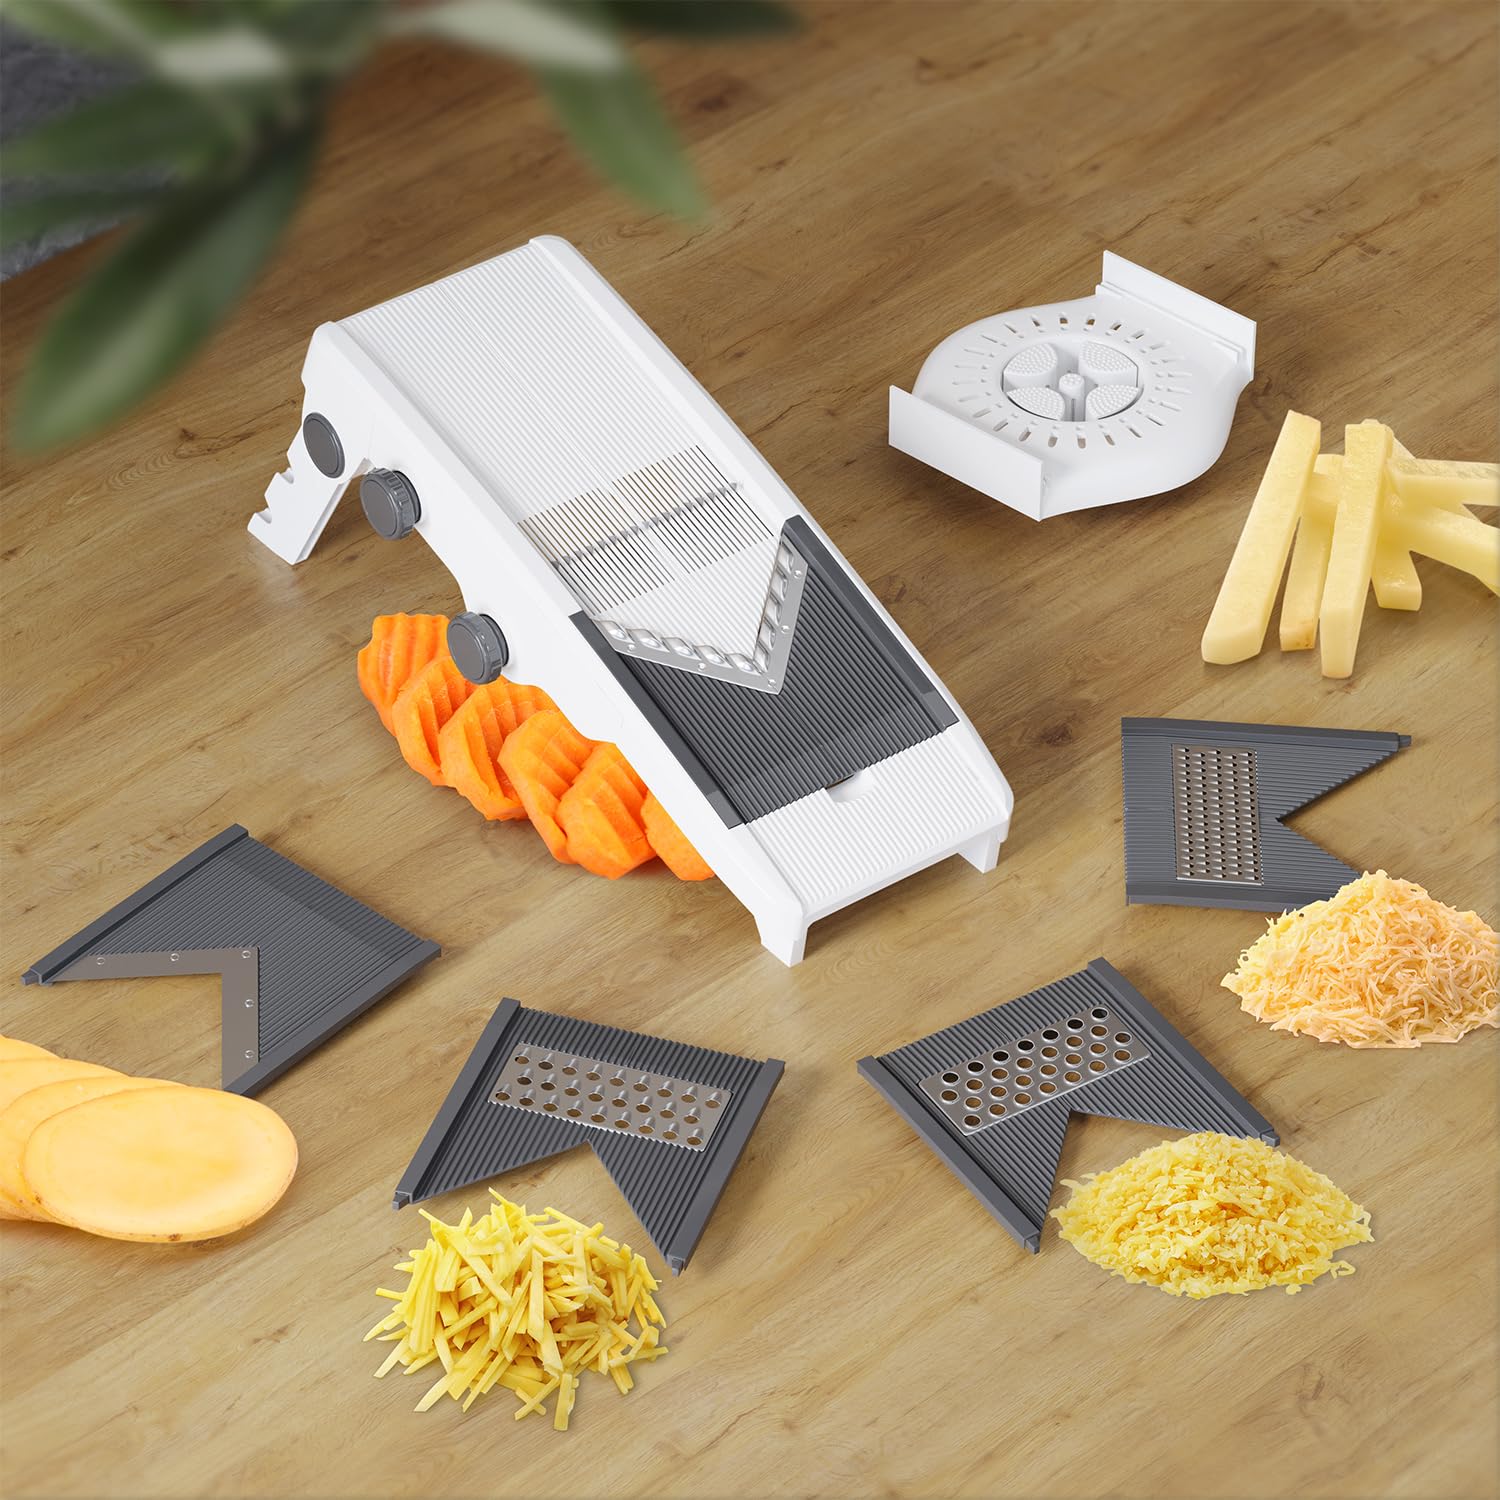 Mueller V-Pro 5-Blade Mandoline Slicer for Kitchen, Adjustable with Foldable Stand, Fruit, Vegetable Chopper, Cheese Grater, Fast Meal Prep, Dishwasher Safe, White